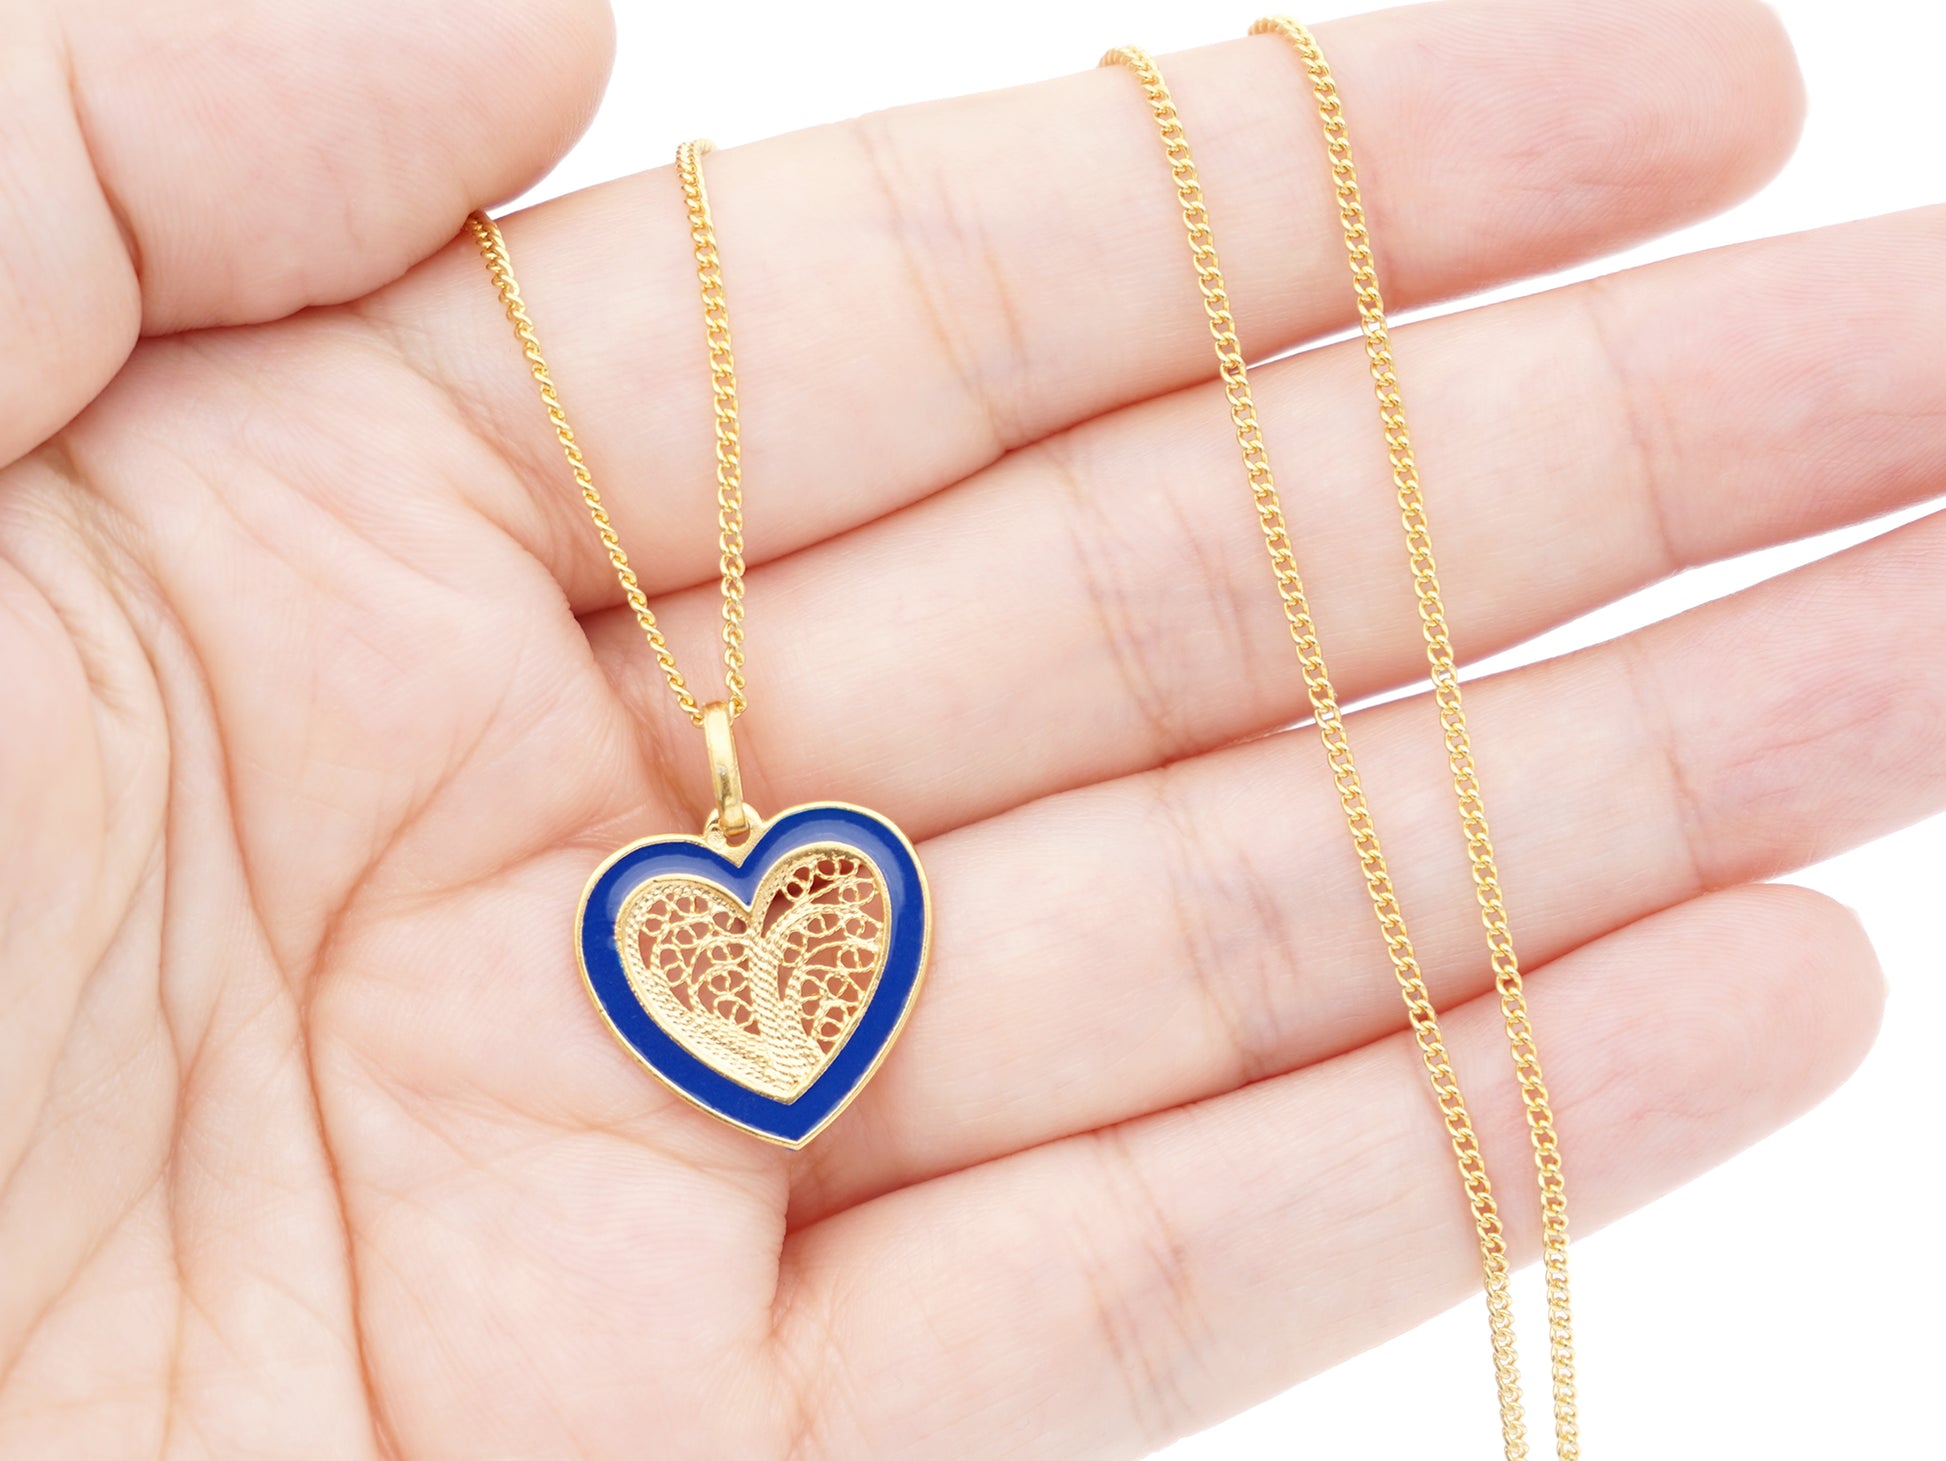 Colar Coração Médio Esmalte Azul, Filigrana Portuguesa, Prata de Lei 925 Dourada - Pormenor na mão